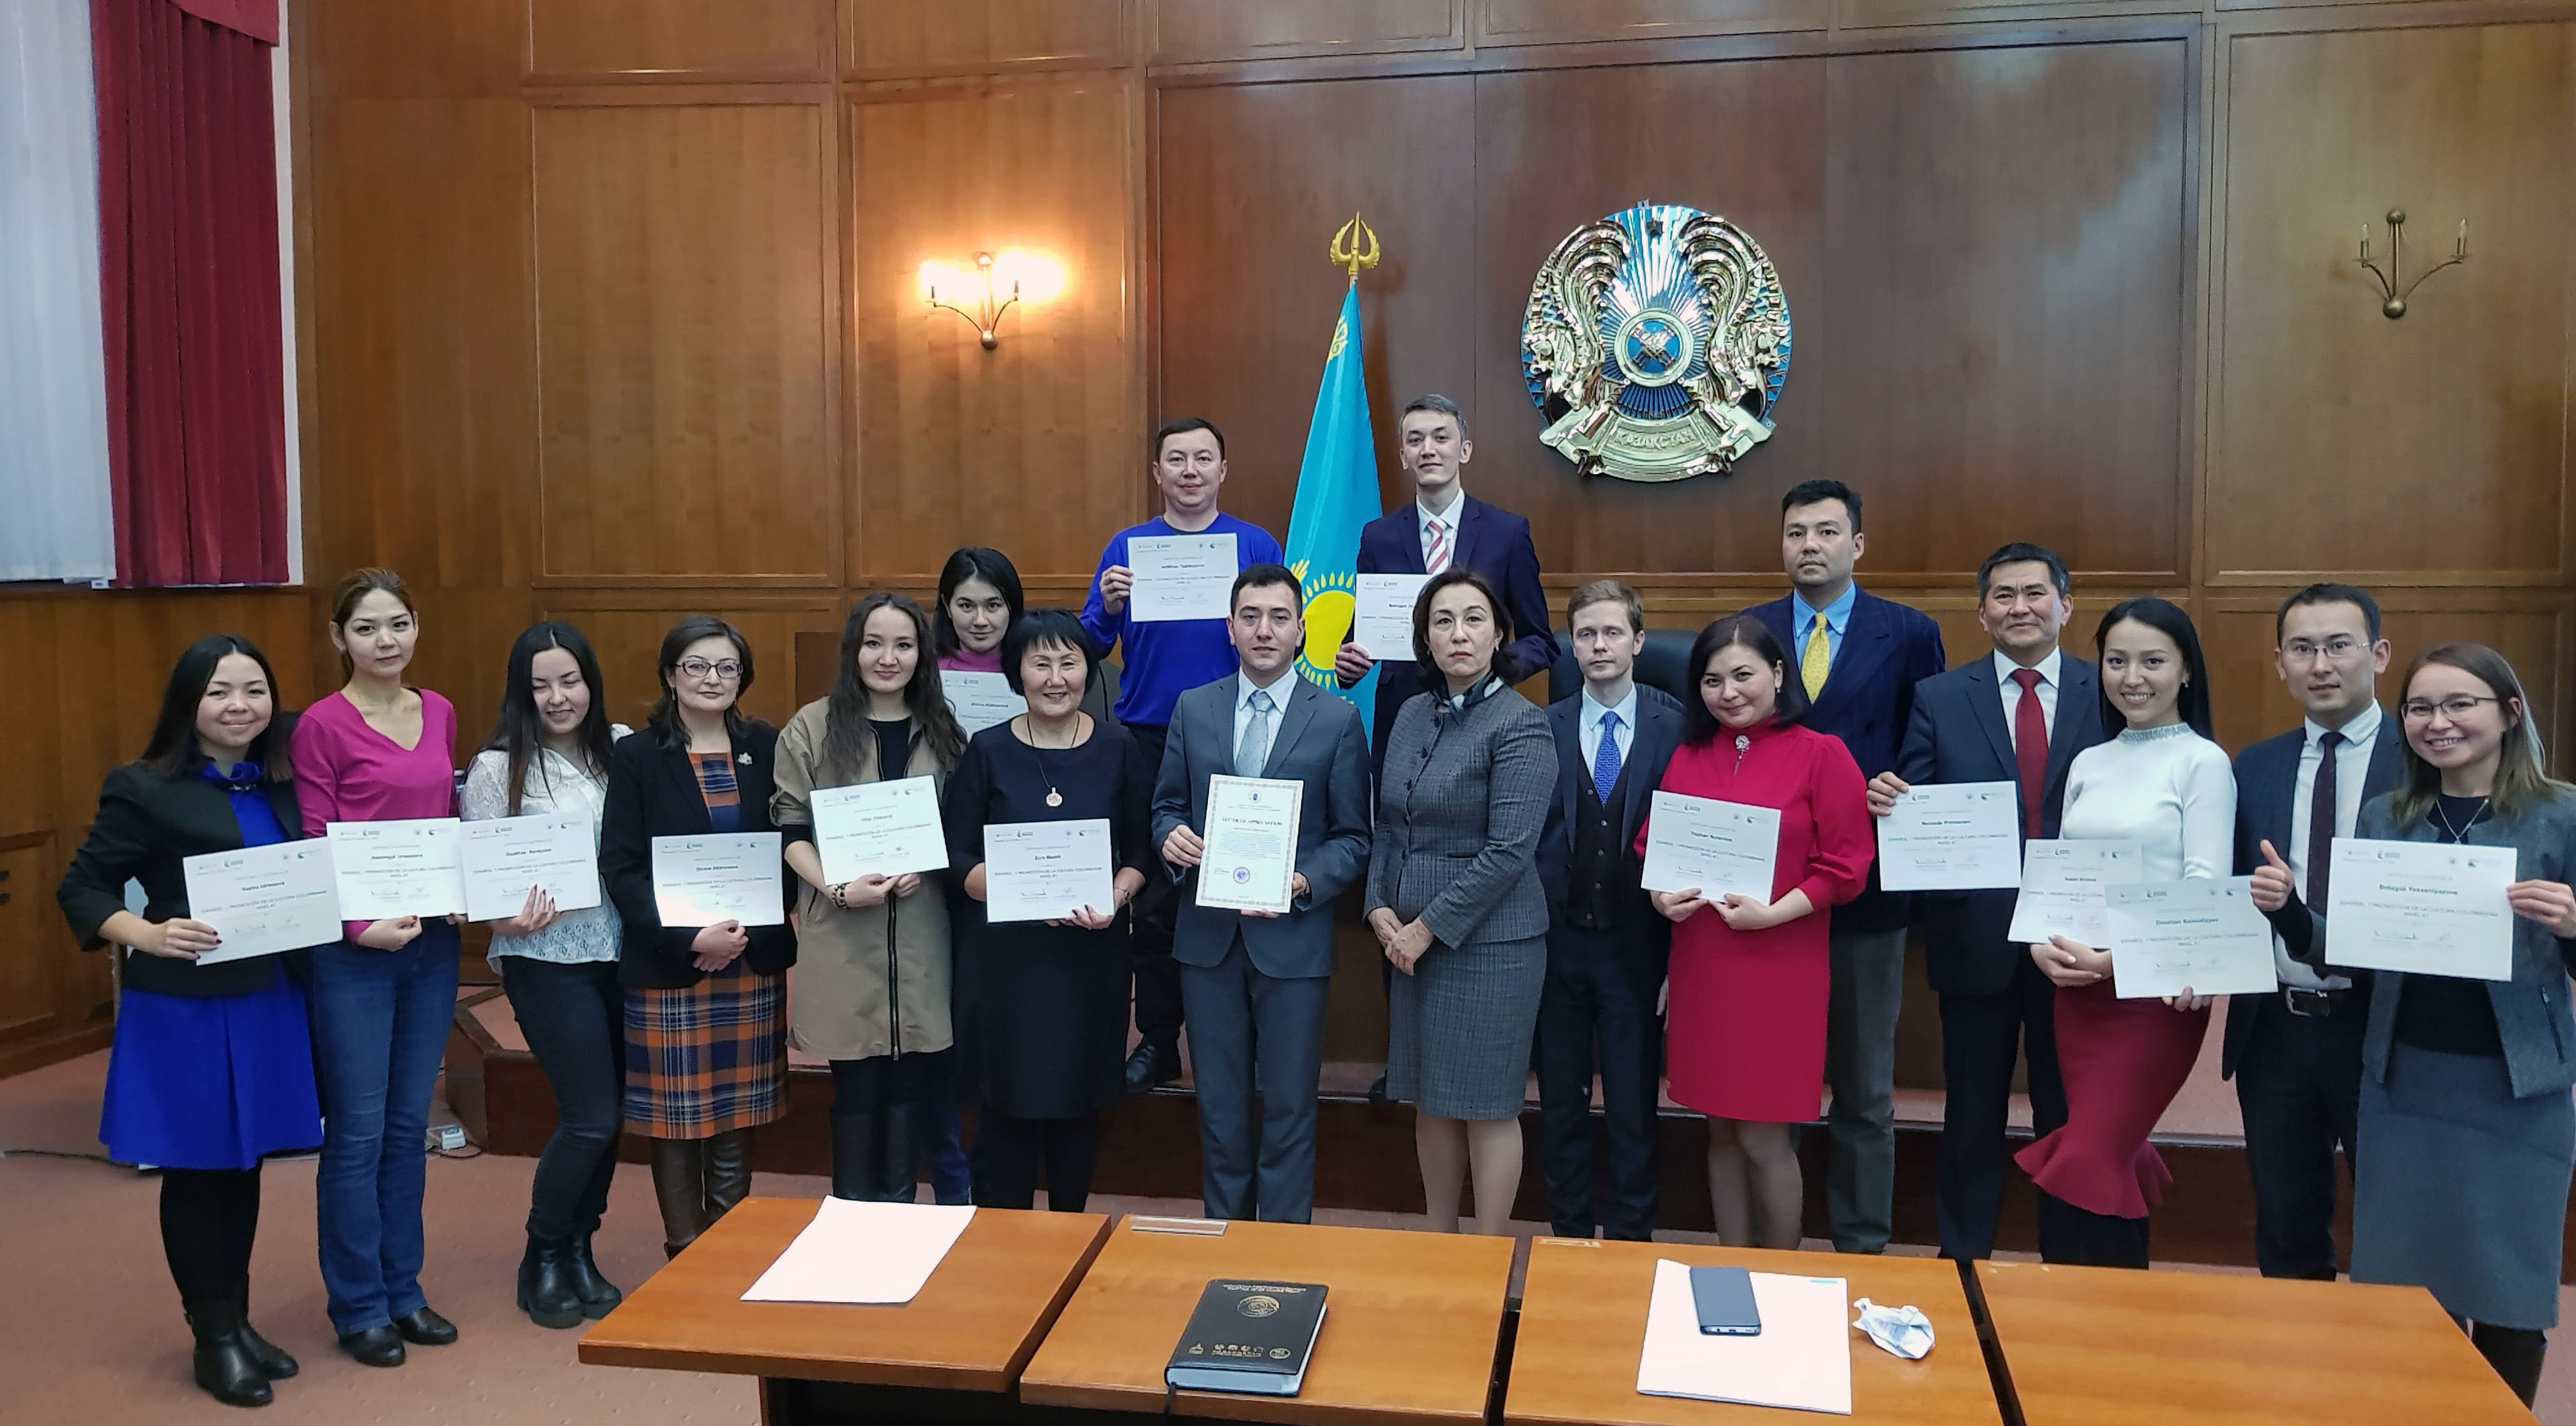 36 diplomáticos y funcionarios públicos de Kazajistán aprendieron español en 2017 gracias al Ministerio de Relaciones Exteriores